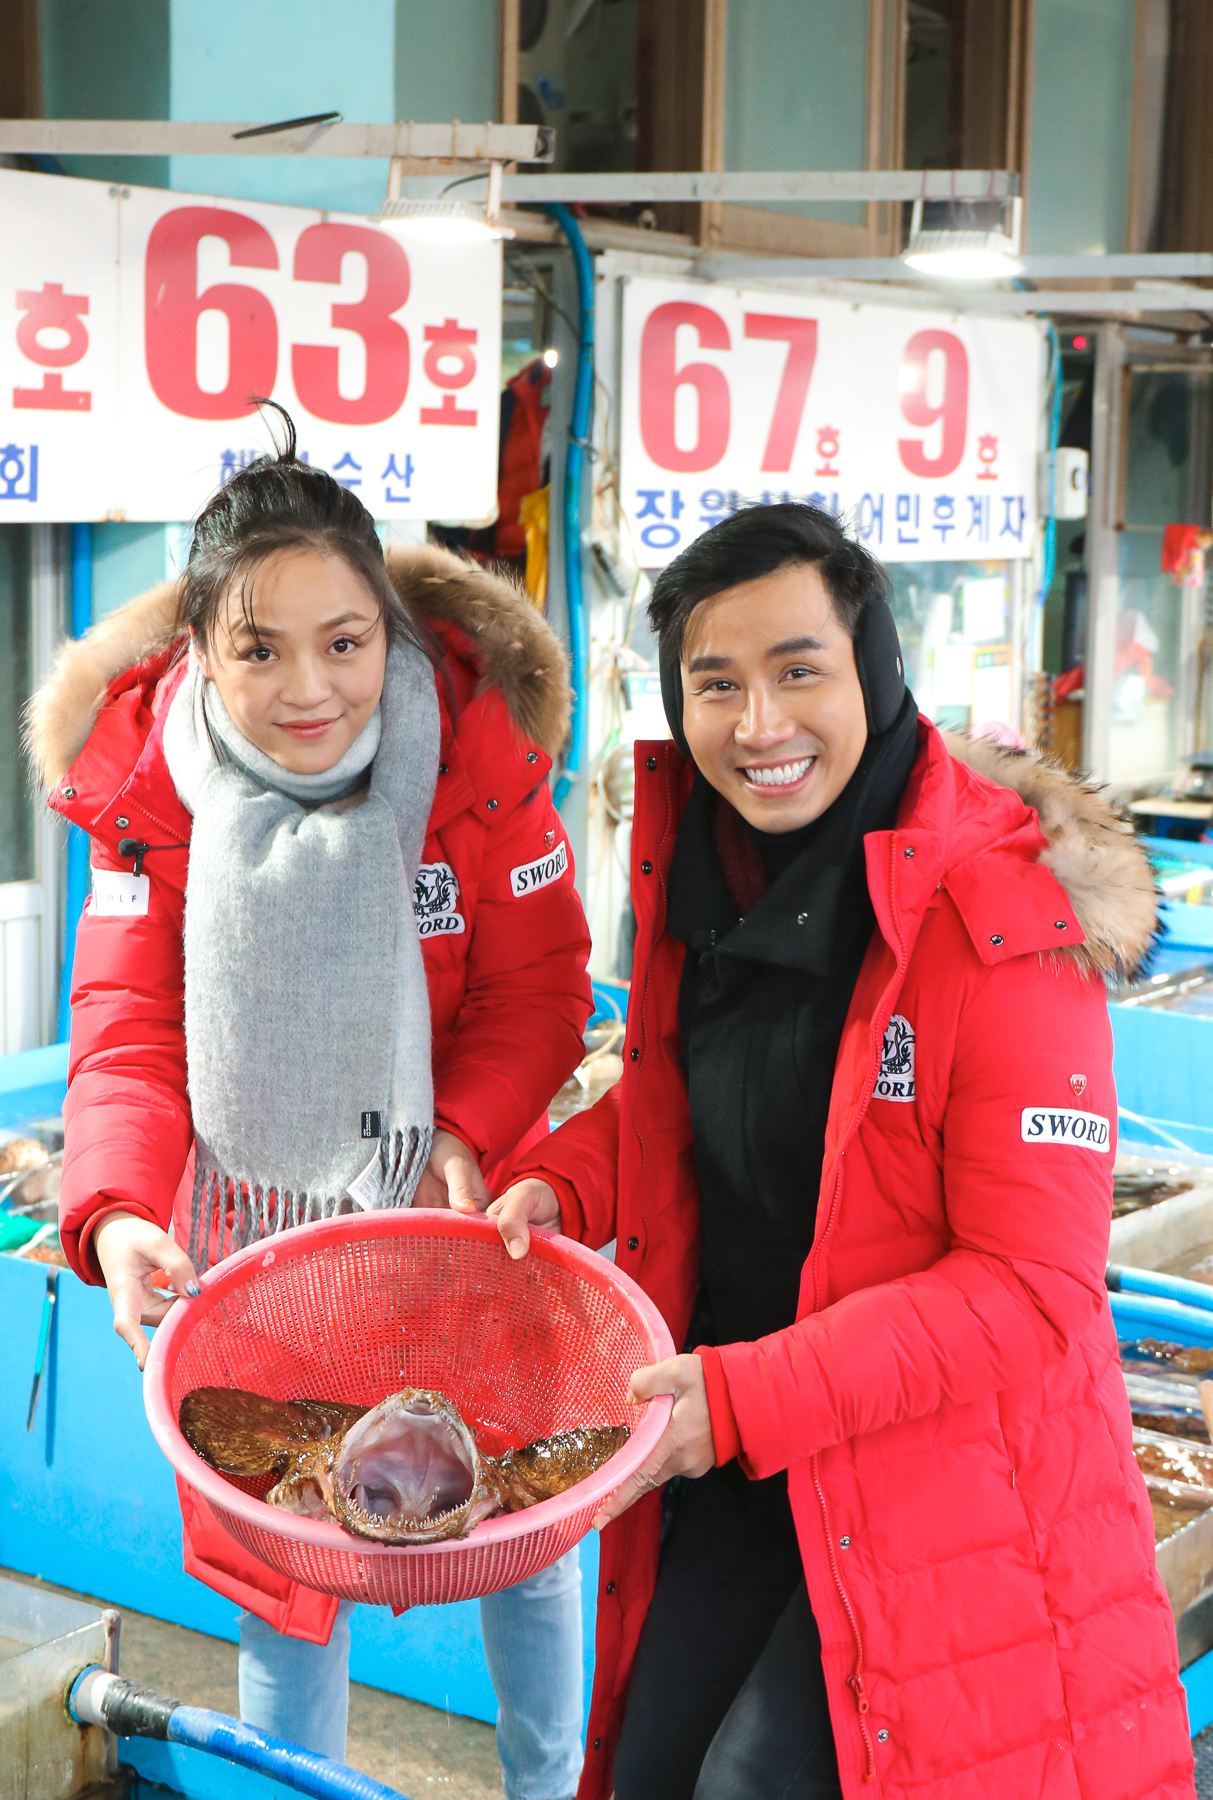 Buổi chiều cùng ngày, cả hai đi chợ cá và chọn mua hải sâm, một loại hải sản quý giá của biển cả được đánh bắt ở vùng biển Hàn Quốc